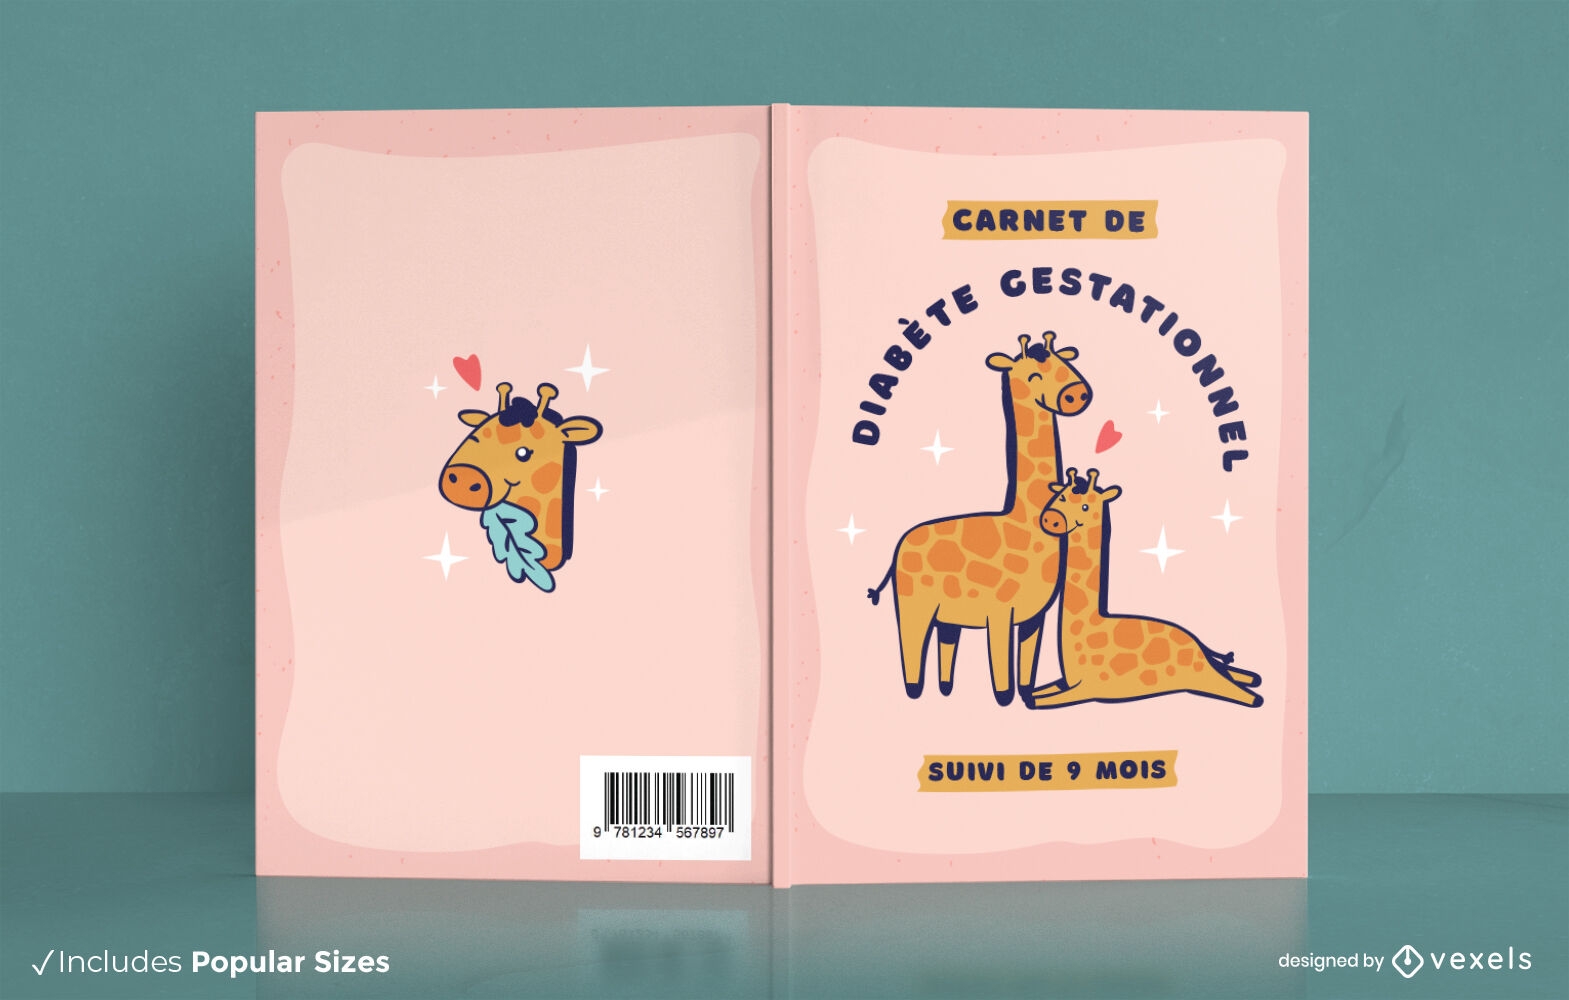 Cute giraffe animals book cover design